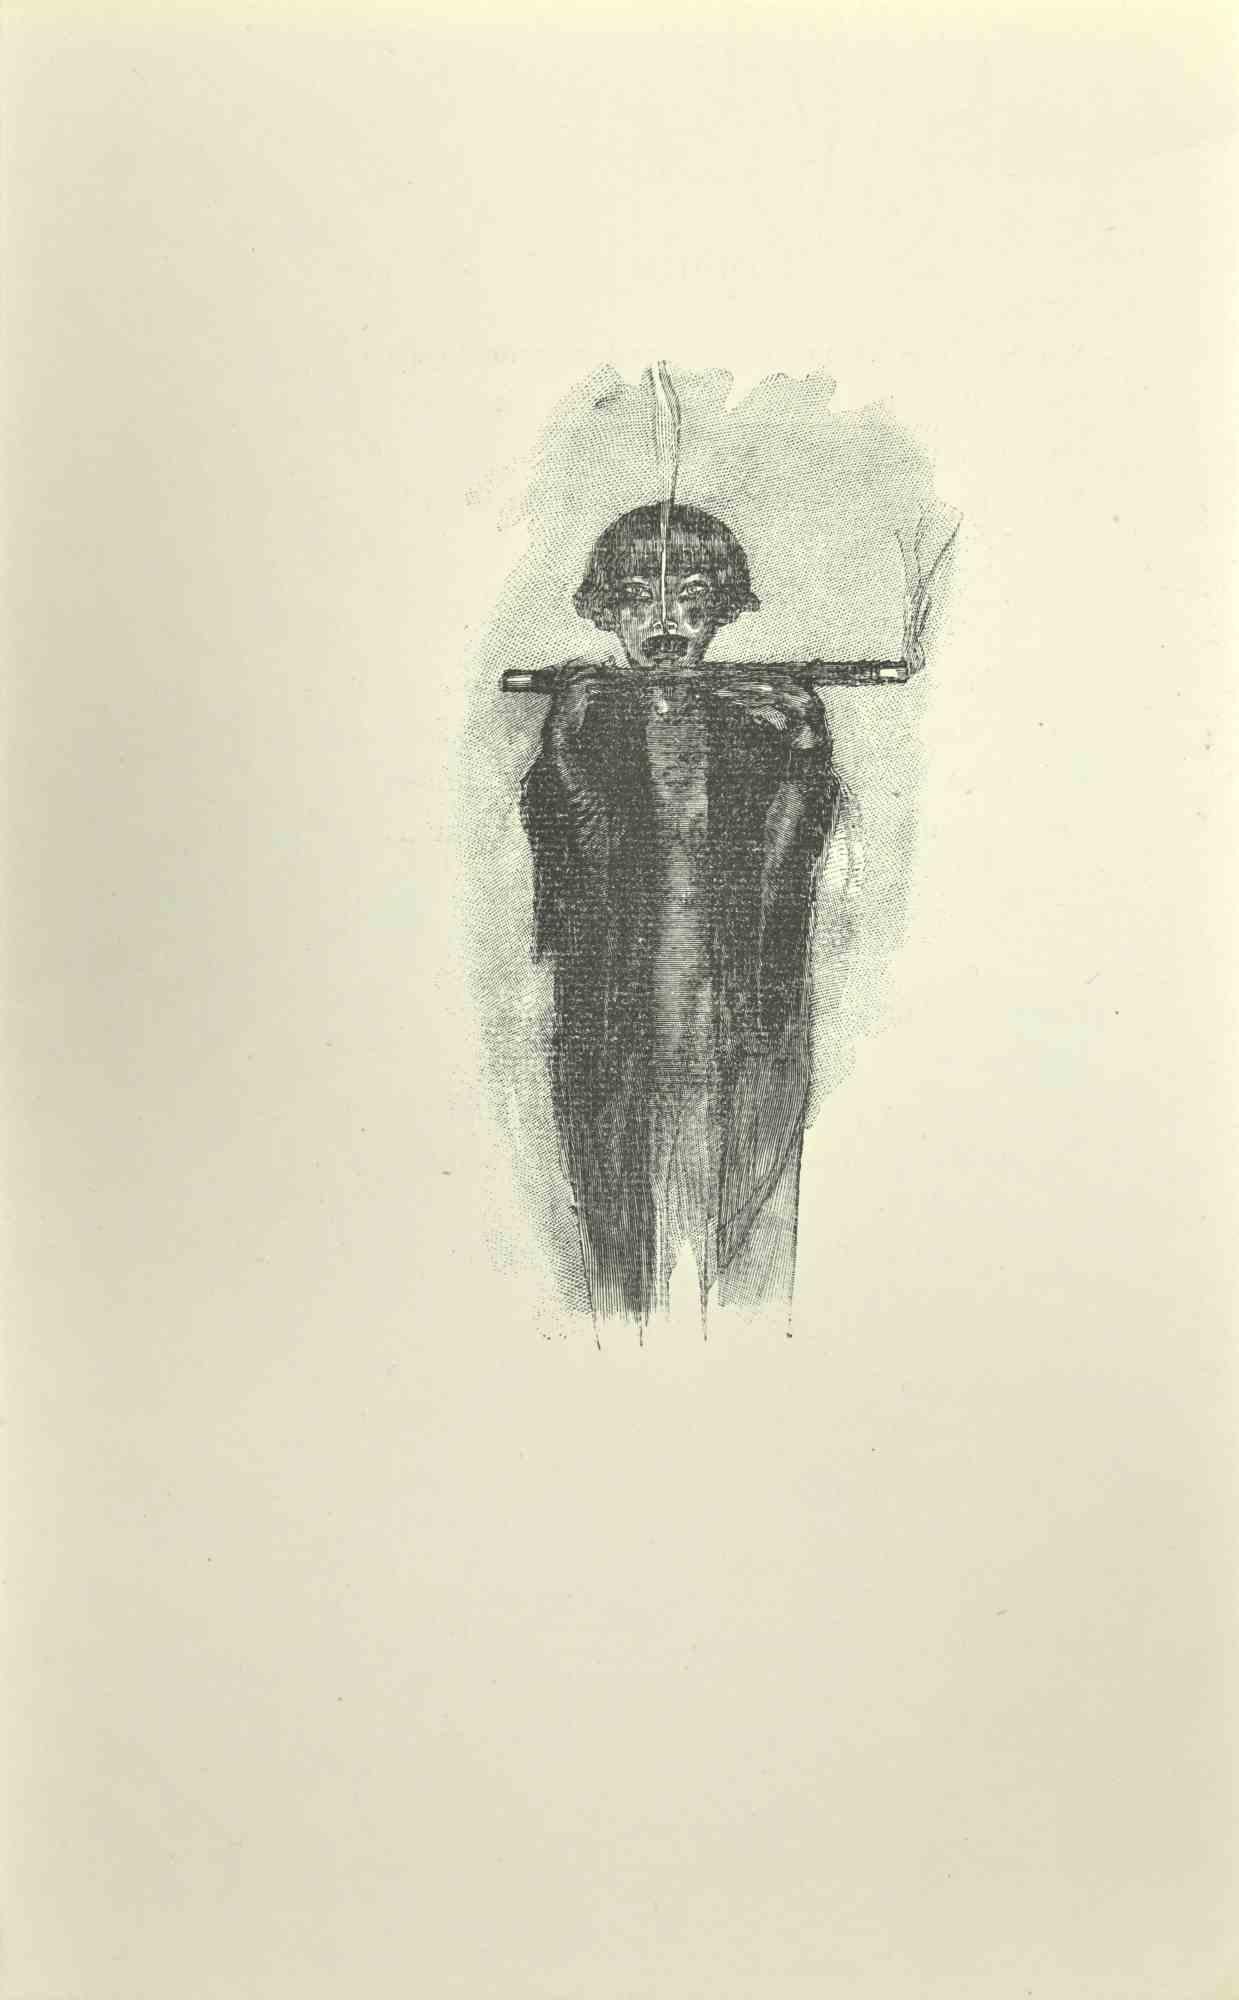 Die Figur ist ein Holzschnitt auf Papier, der nach Jean Paul Sauget für Maurice Magre's Les Soirs d'Opium realisiert wurde.

Veröffentlicht im Jahr 1921.

Gute Bedingungen.